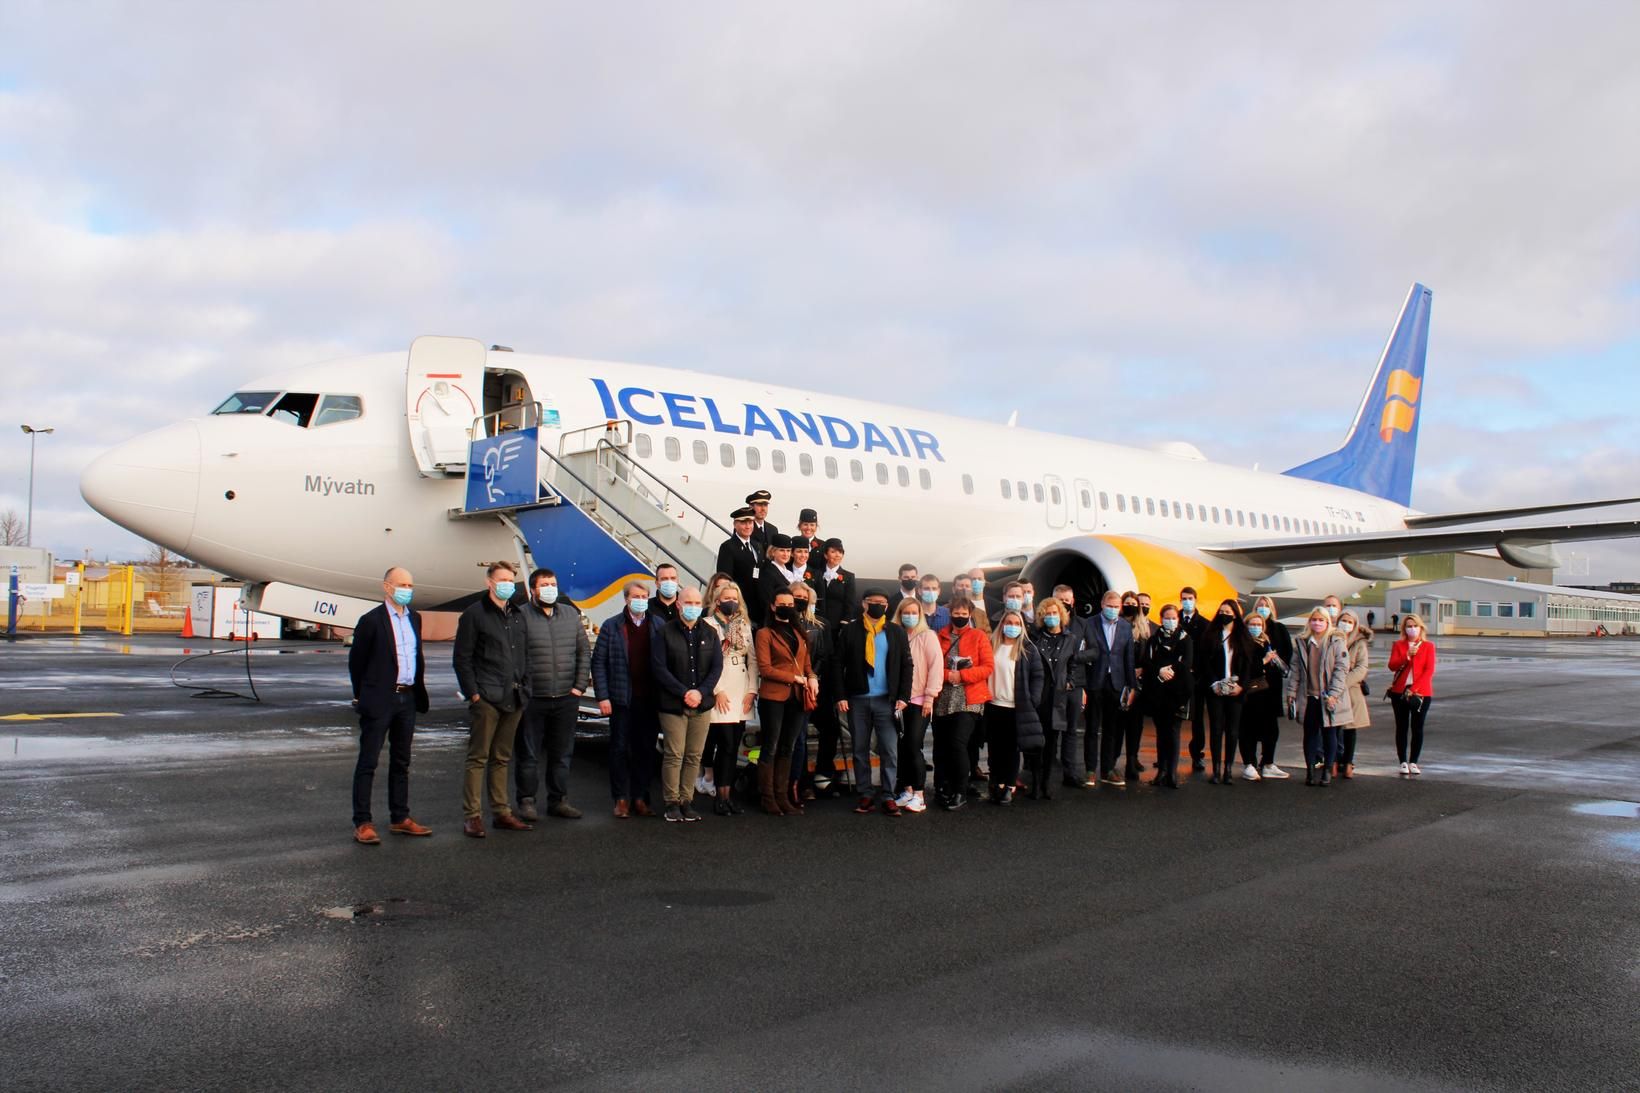 Farþegar í fluginu við vélina eftir lendingu á Reykjavíkurflugvelli í …